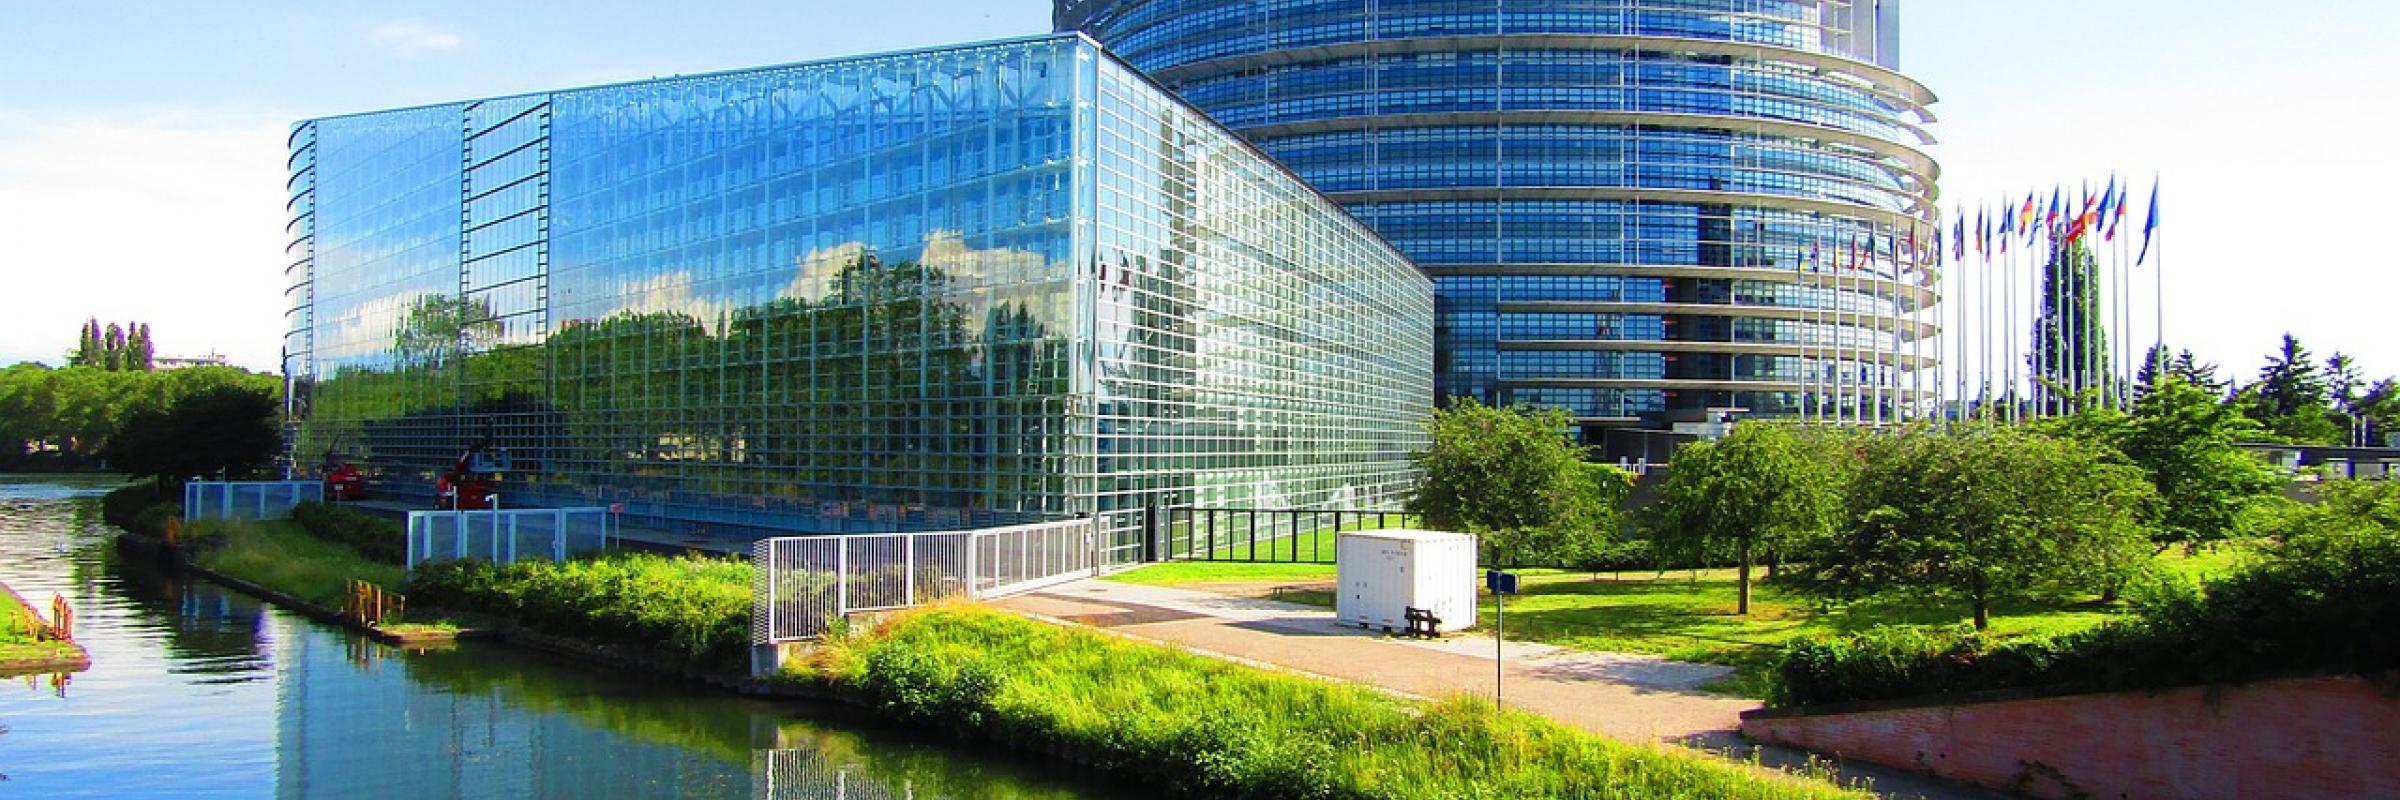 quartier du Parlement européen à Strasbourg